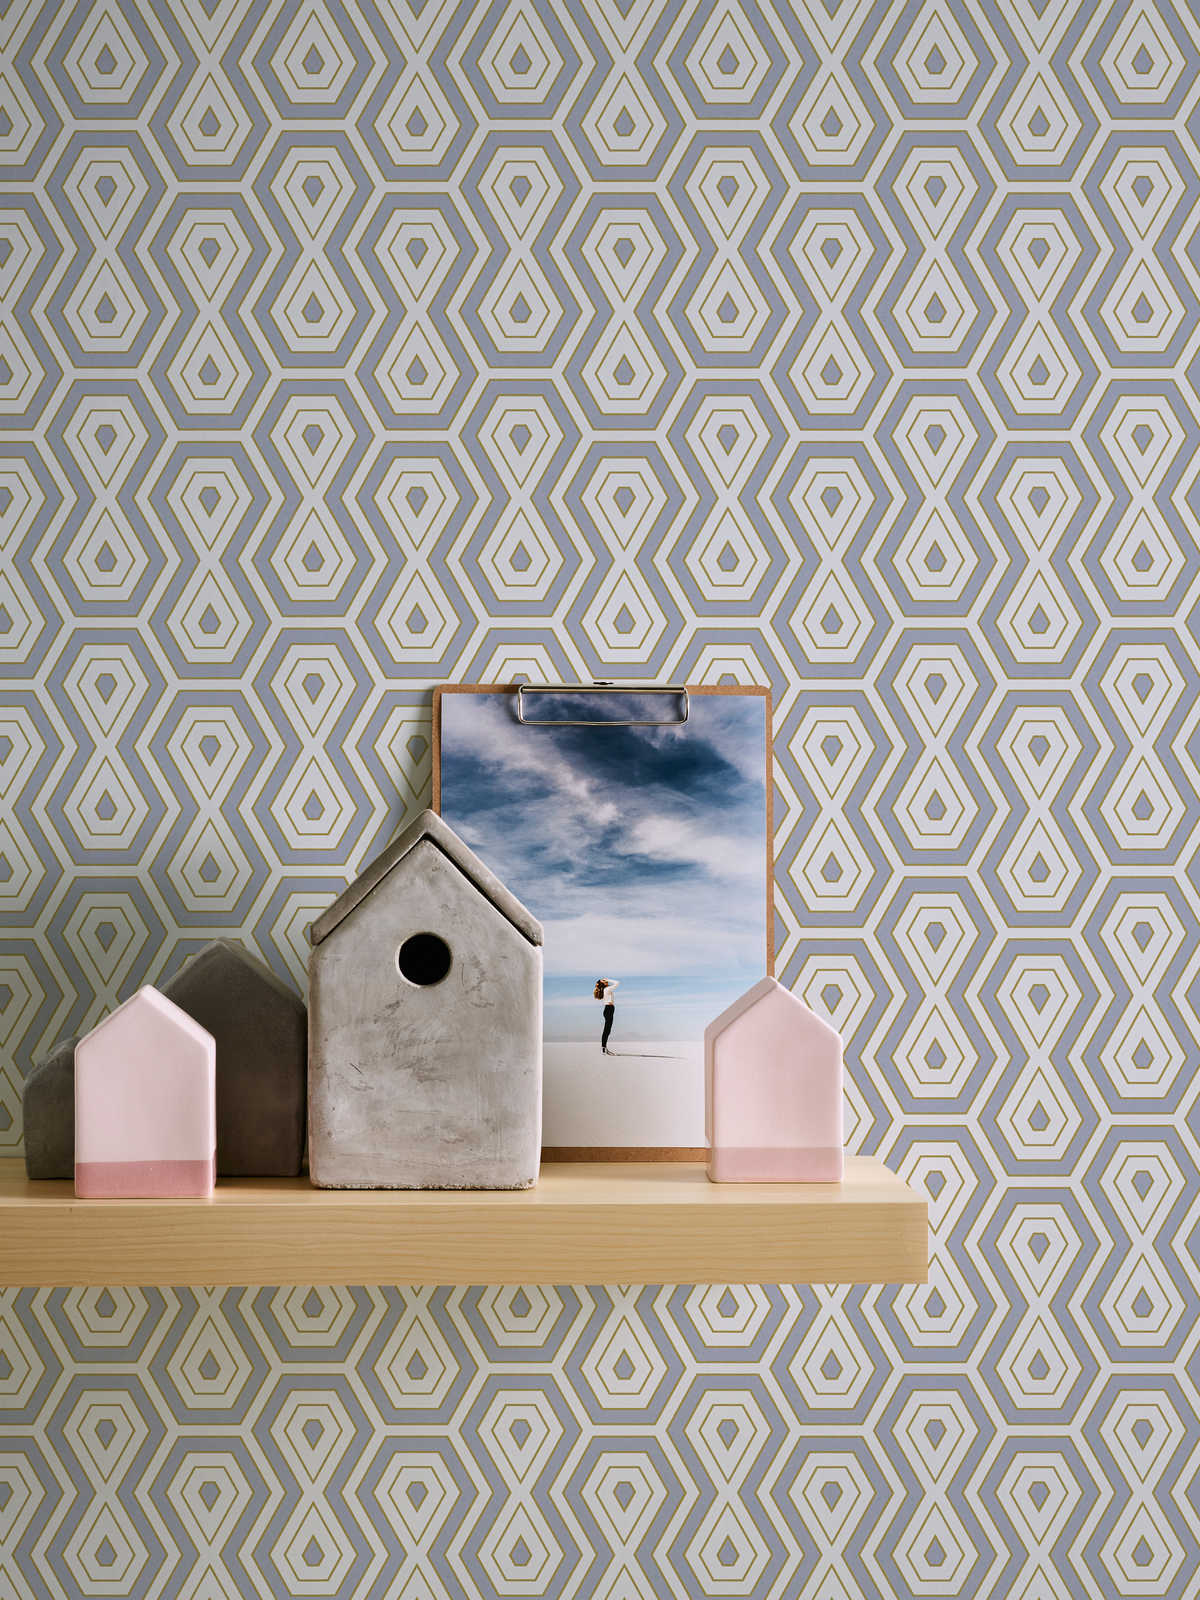             Non-woven wallpaper grey gold pattern in geometric retro design
        